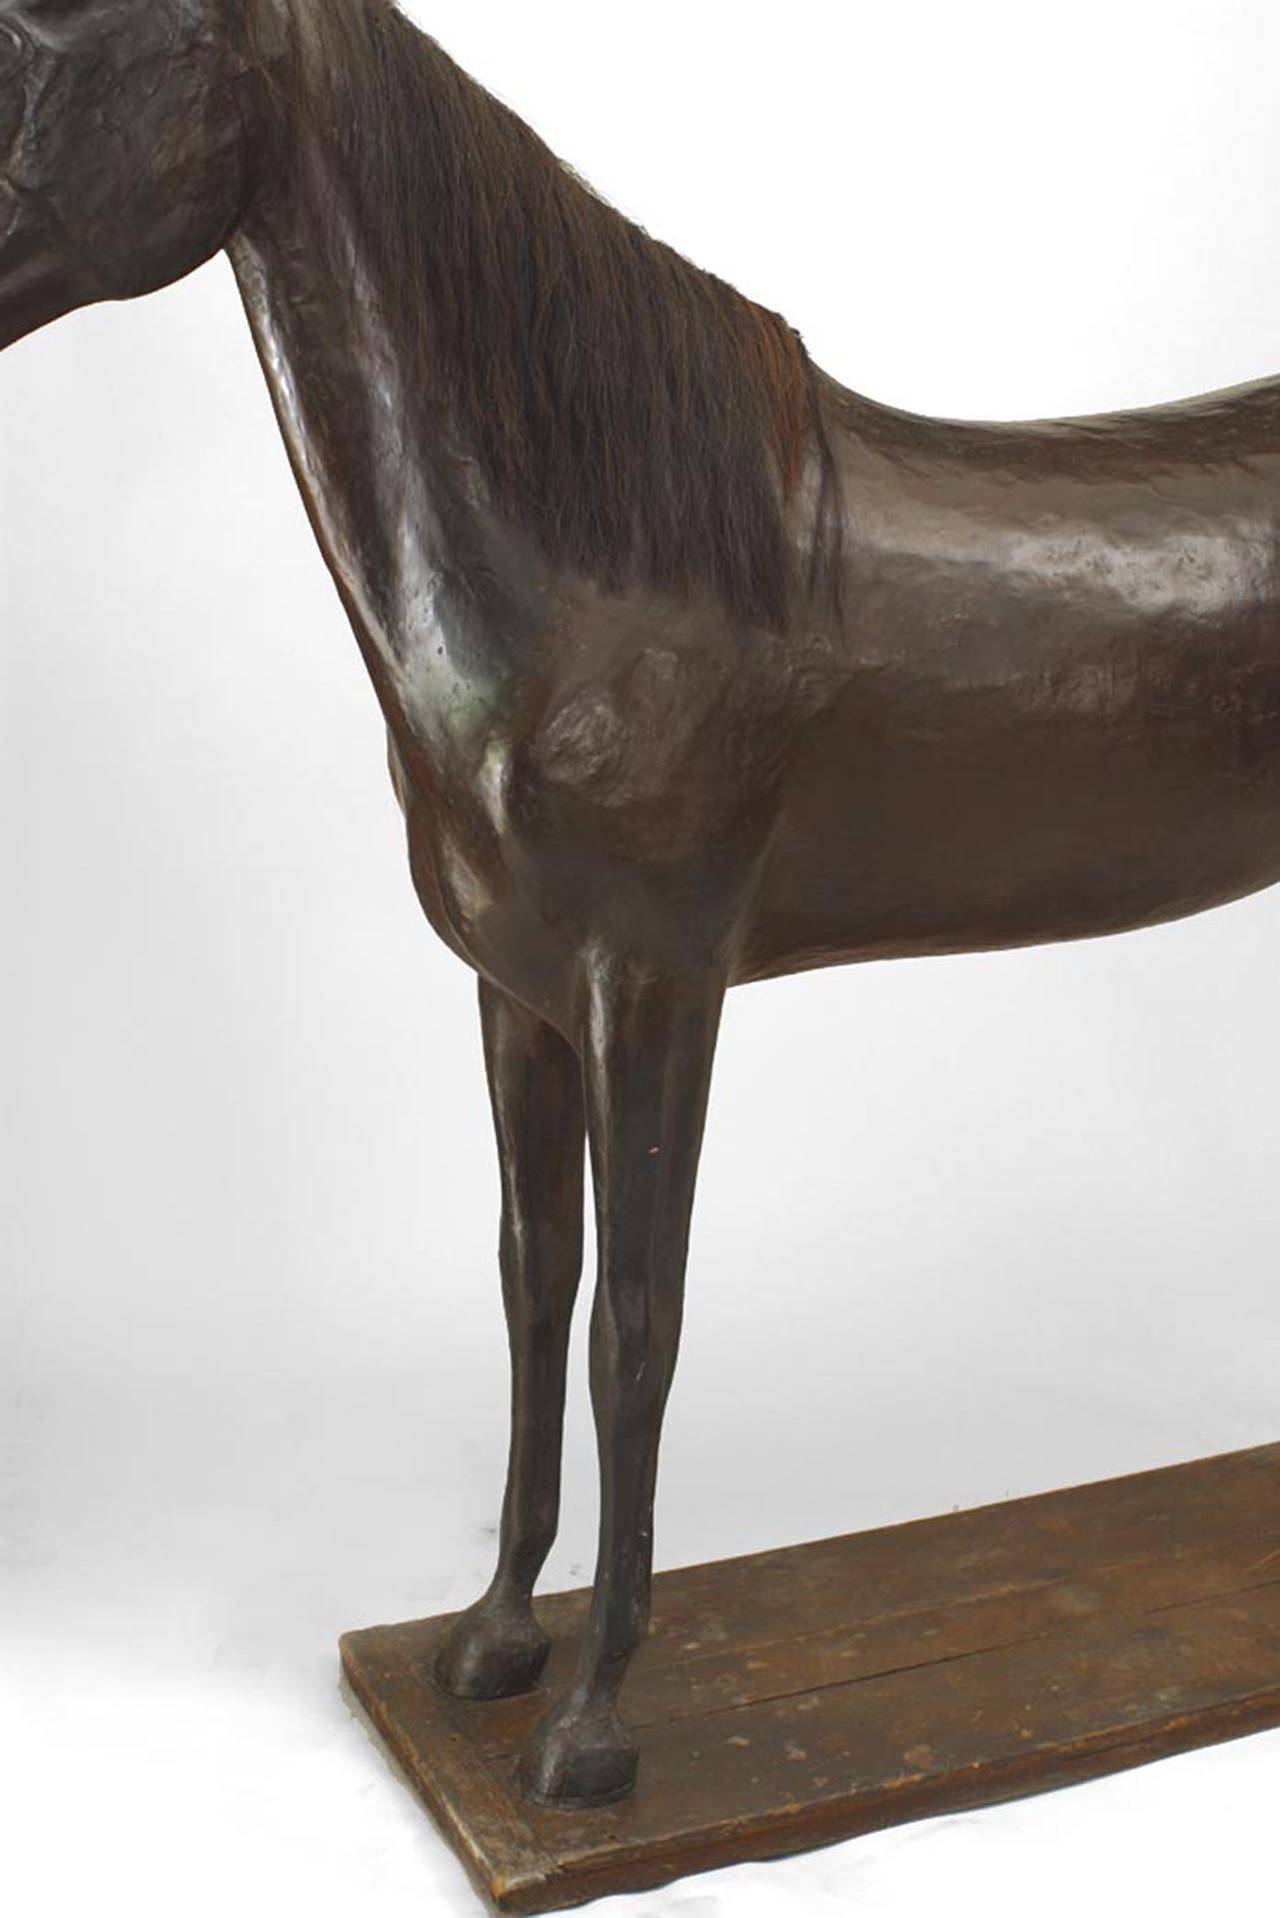 Modèle grandeur nature de cheval en papier mâché de style campagnard anglais sur une base rectangulaire. (19/20ème siècle)
